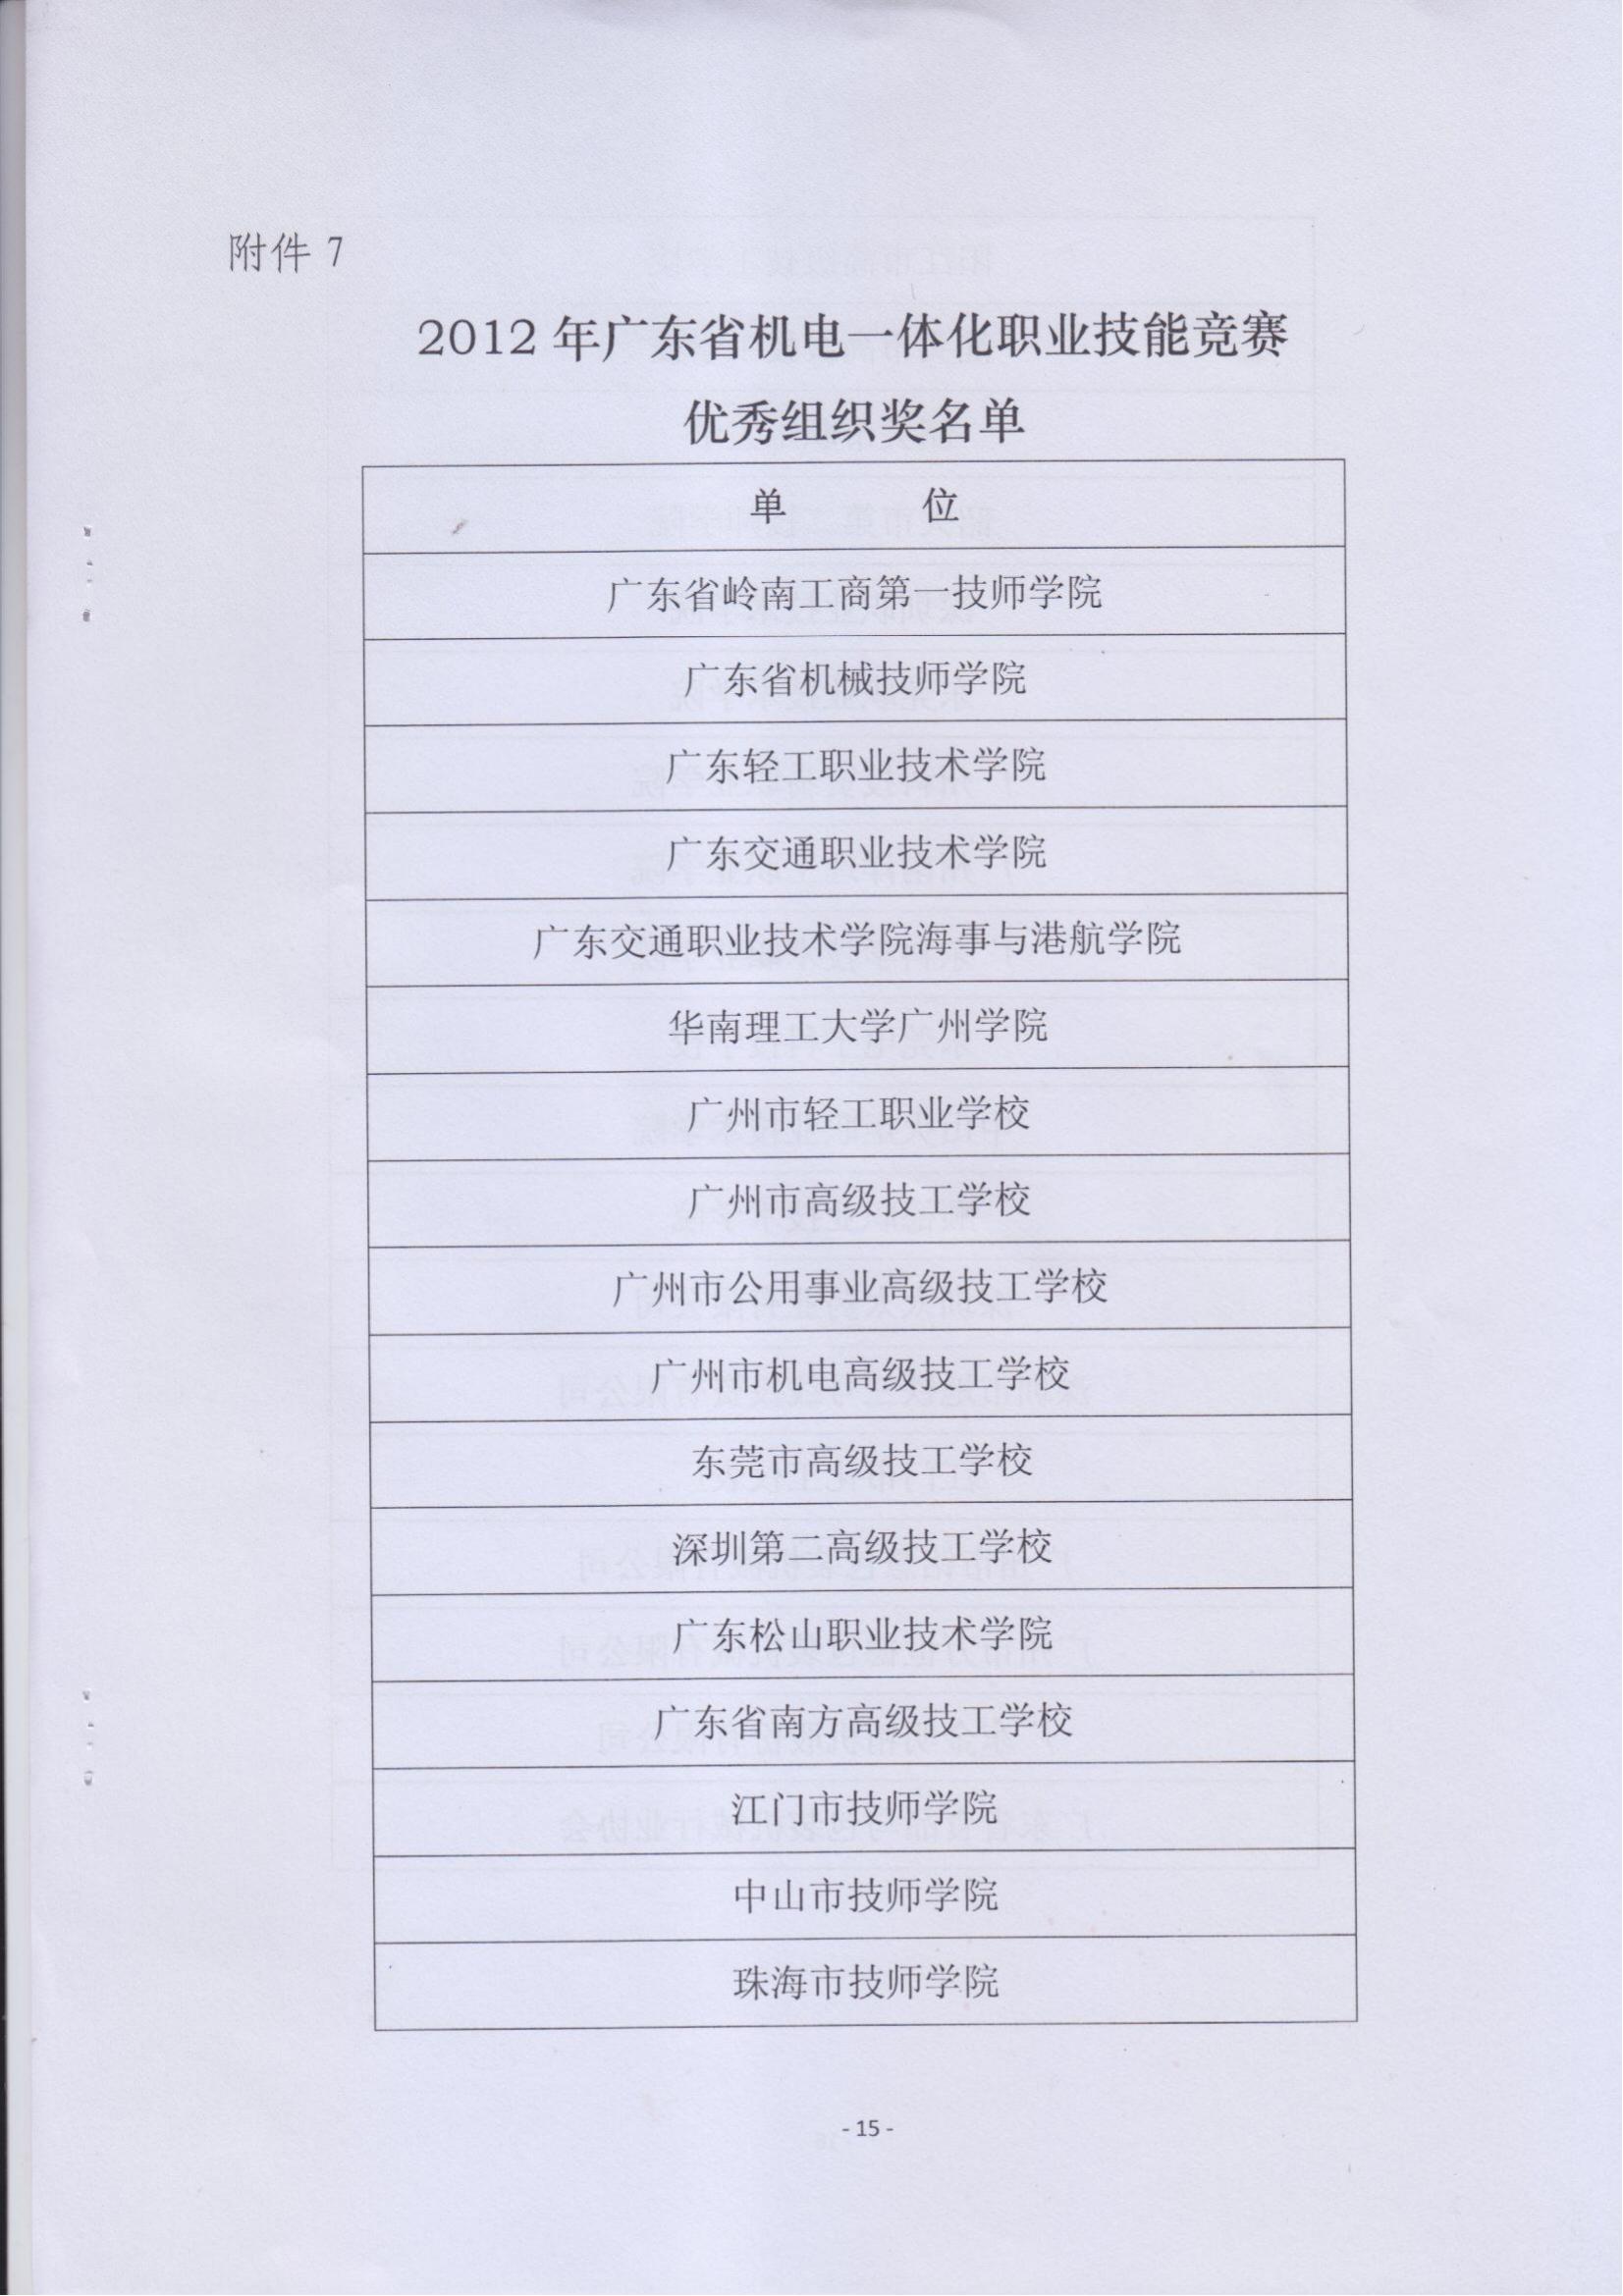 关于表彰2012年广东省机电一体化职业技能竞赛获奖人员和单位的通报_14.jpg